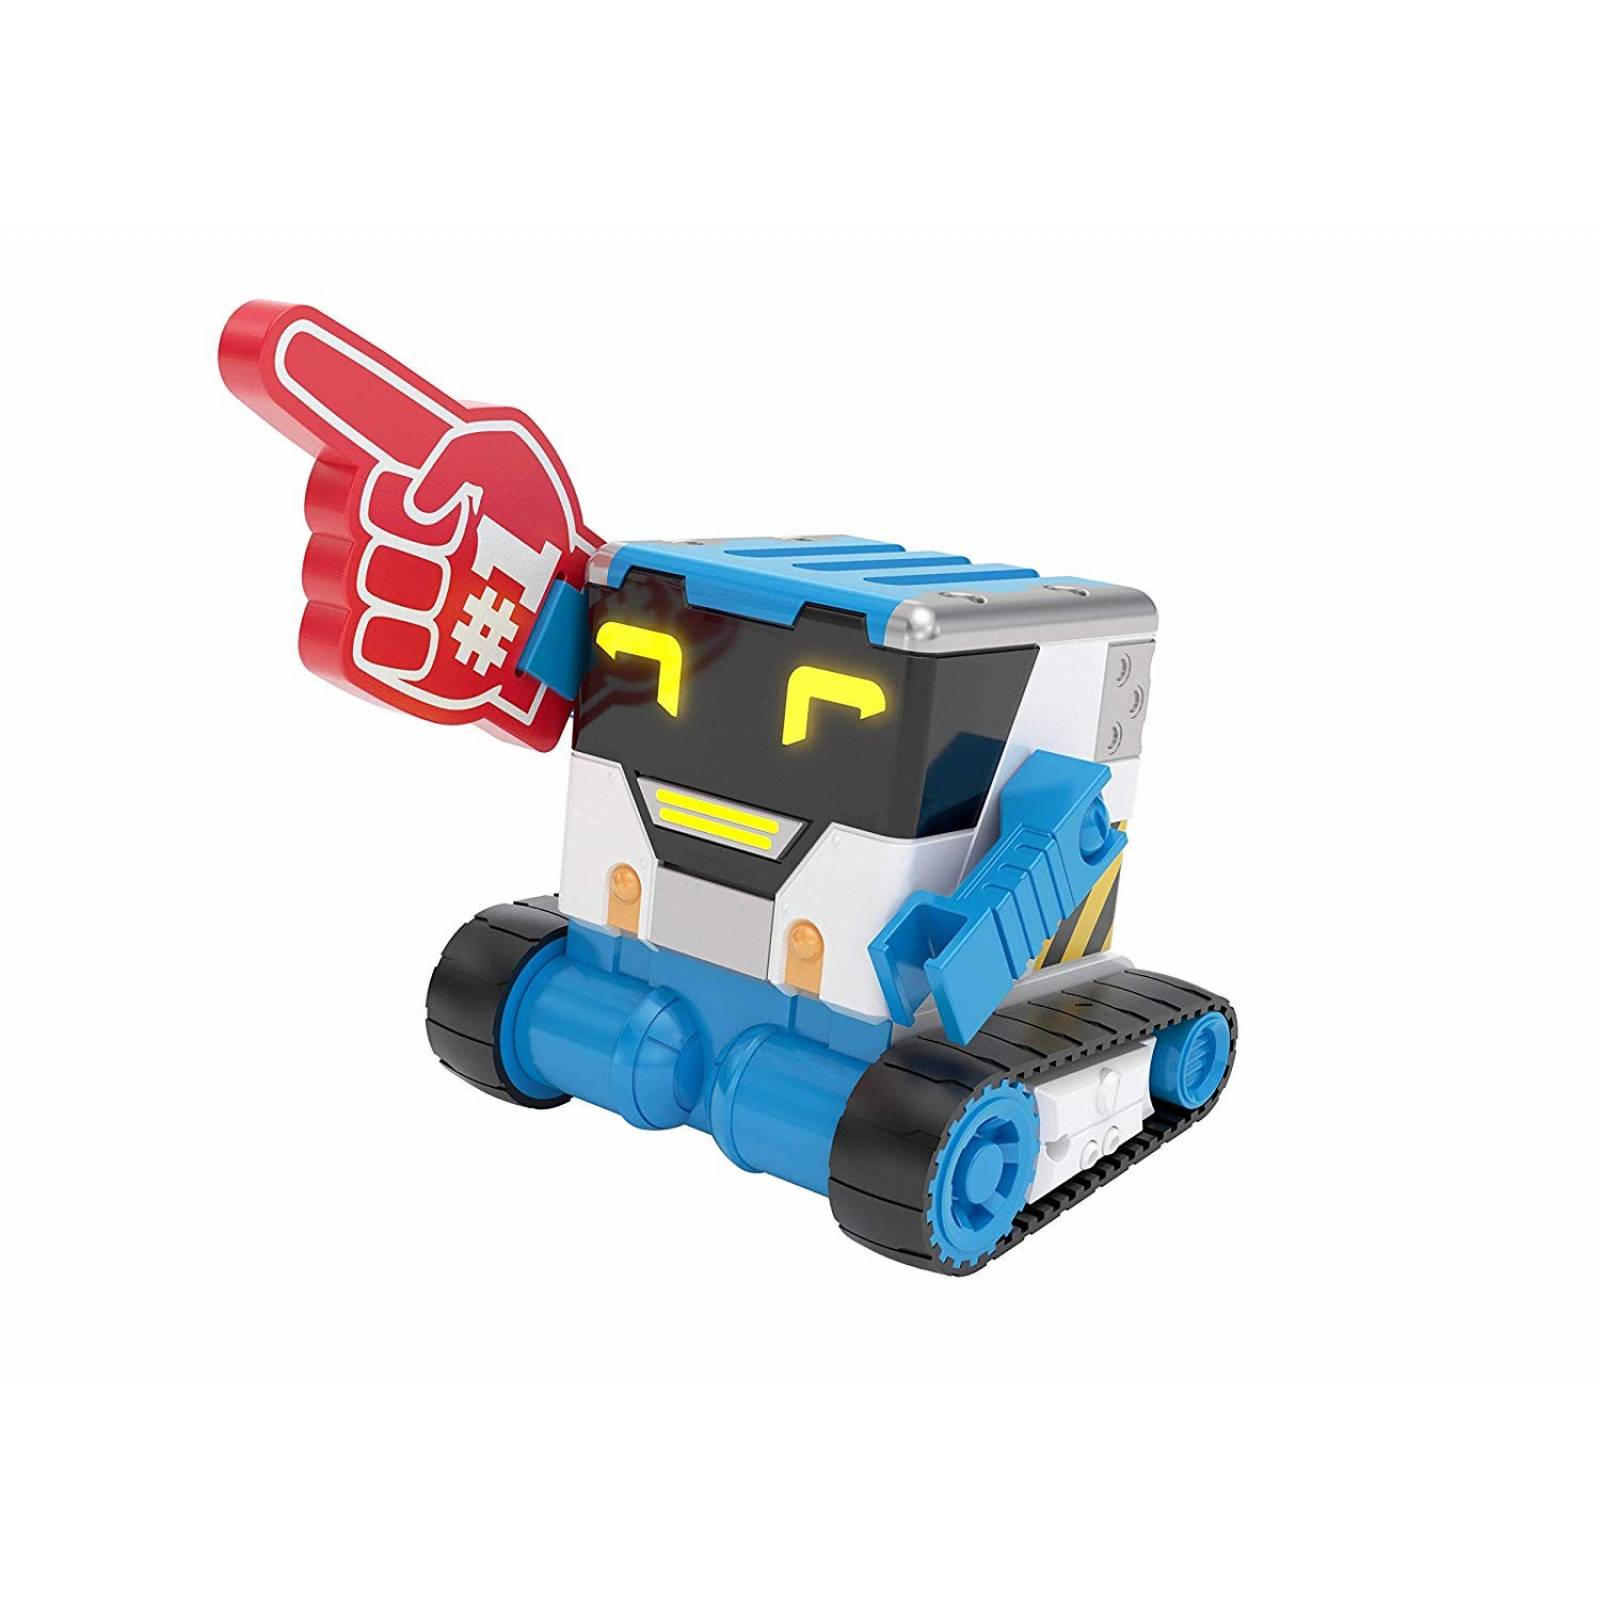 Robot juguete Really RAD Robots Interactivo Control Remoto